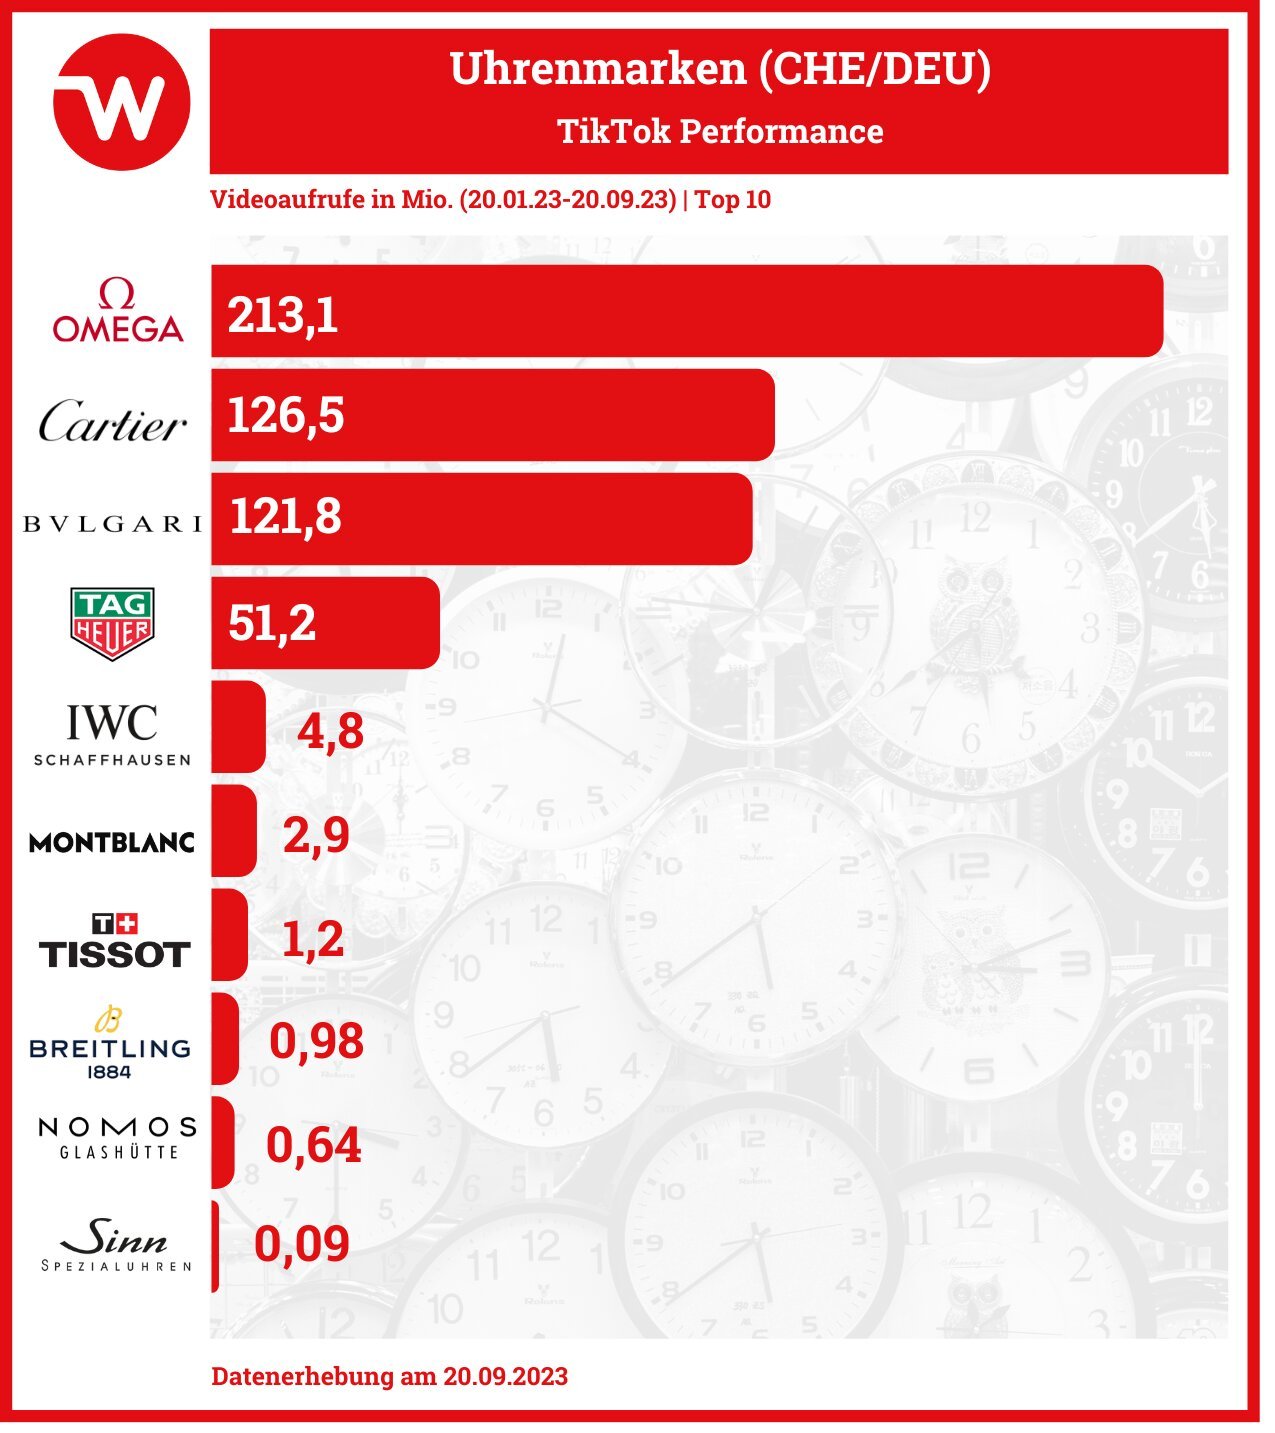 Schweizer und deutsche Uhrenmarken im TikTok Performance-Vergleich: OImega, Cartier und Bulgari in den Top-3.